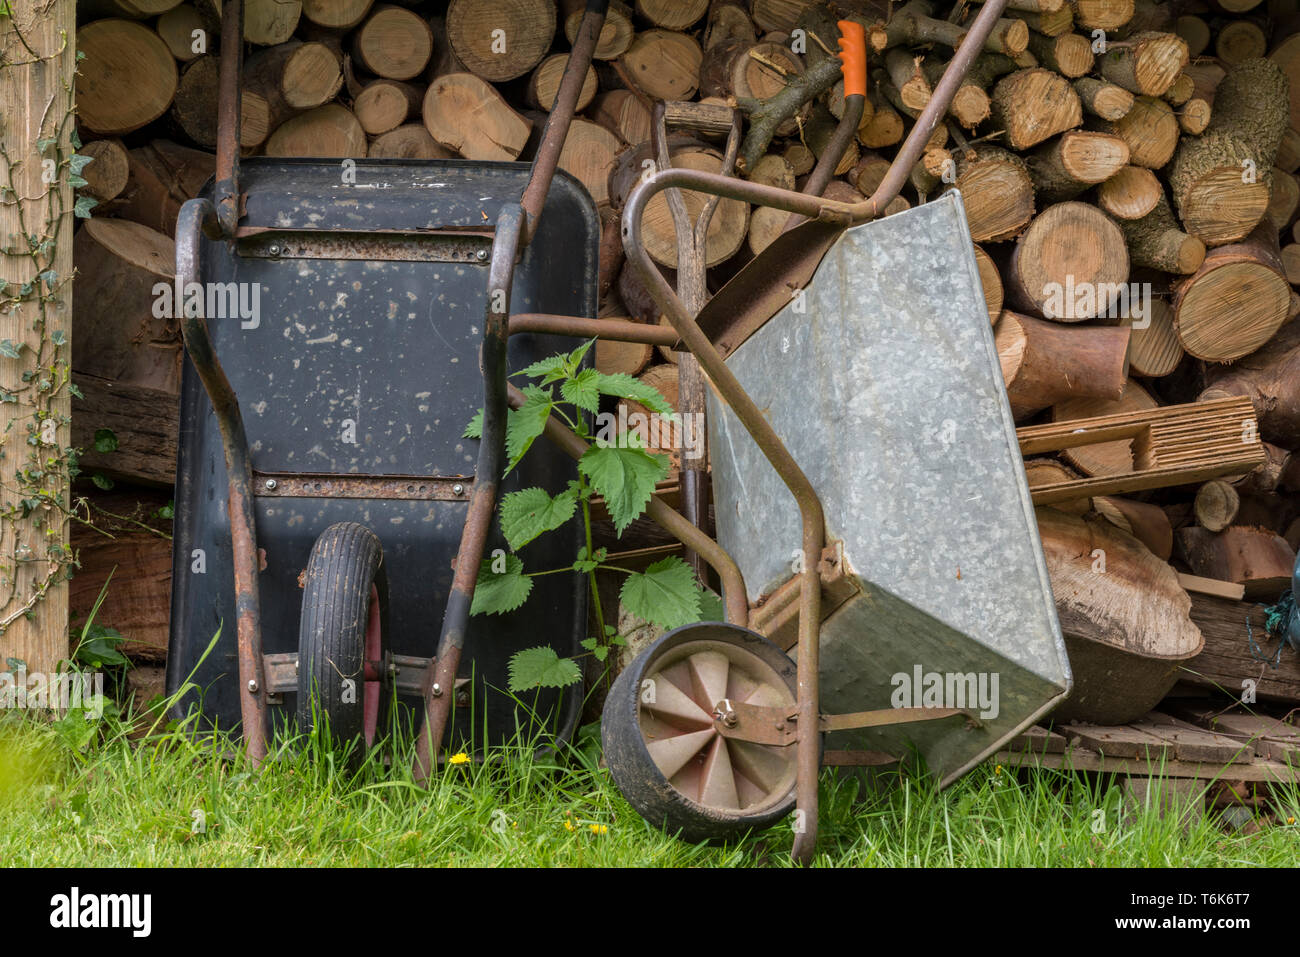 Zwei rostigen alten Schubkarren neben einem Haufen Brennholz in einem Garten auf der Wiese anmelden. Stockfoto